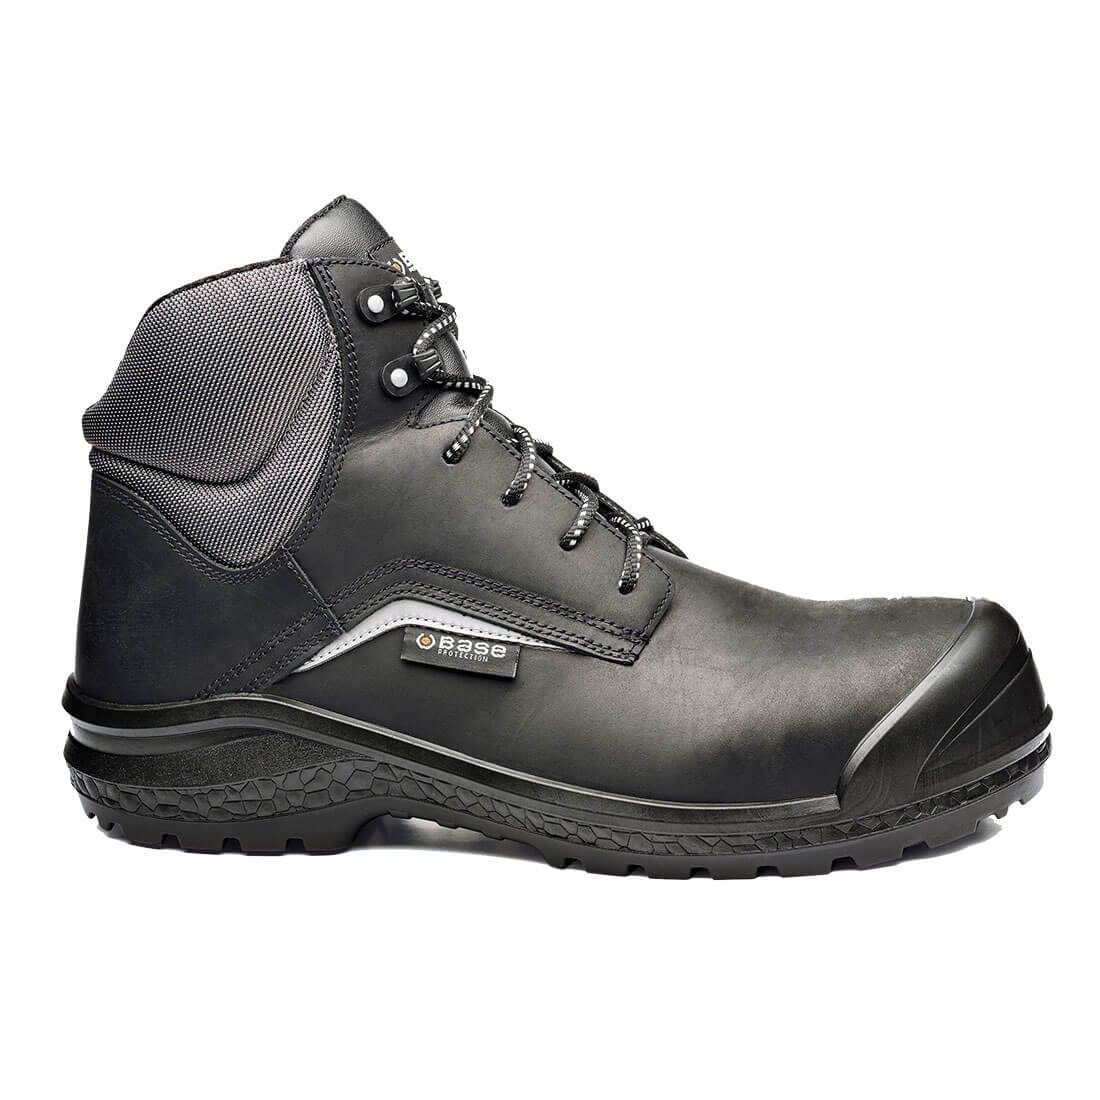 Base Footwear Sicherheitsschuhe B0883C - Be Grey Mid S3 CI SRC Schutzkappe Sicherheitsschuh wasserabweisend, rutschhemmend, antistatisch, Schutzkappe, metallfrei | Sicherheitsschuhe